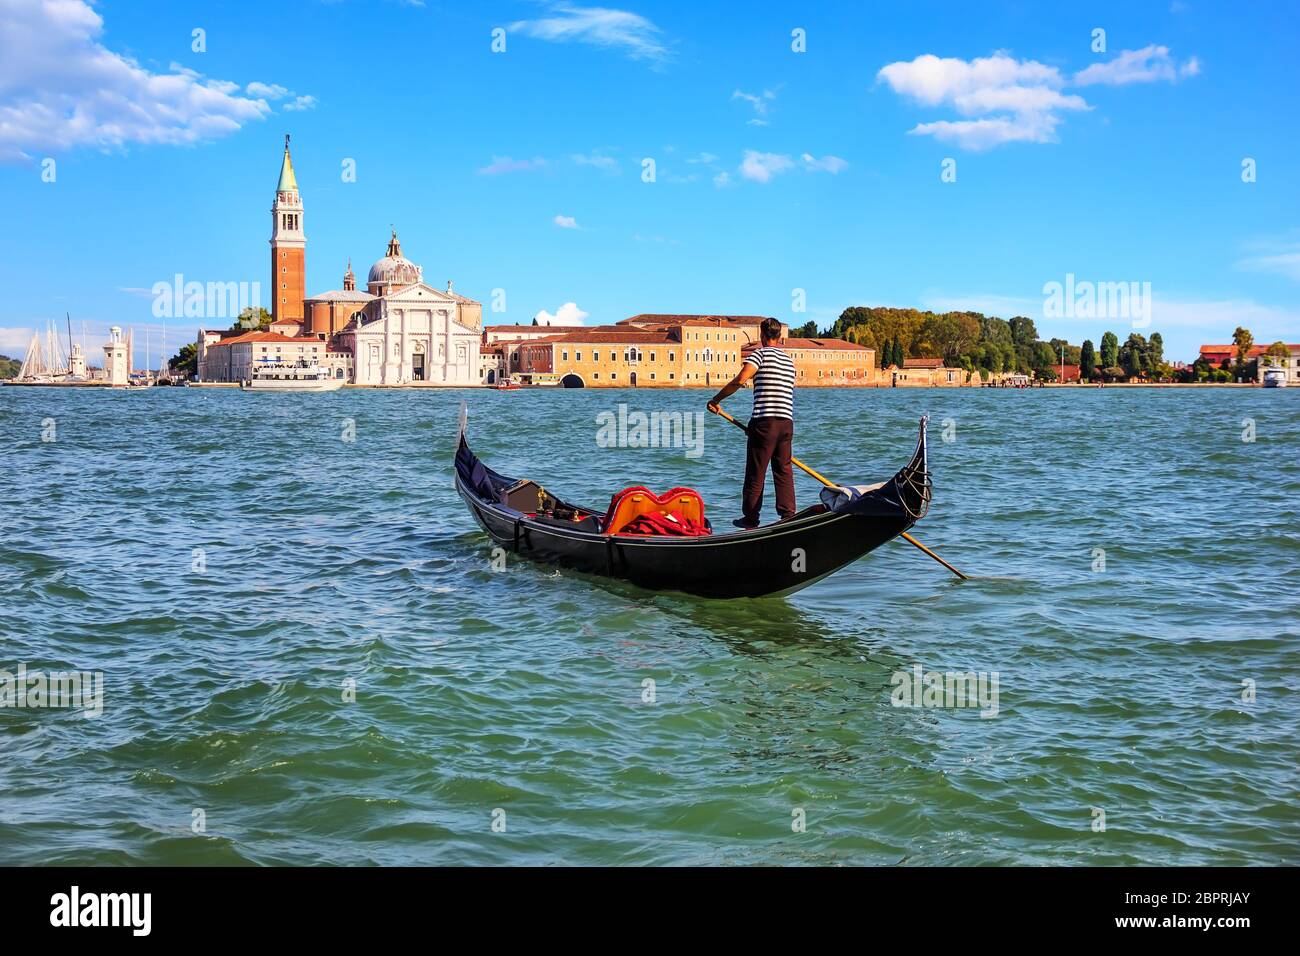 A gondolier in Venice going to San Giorgio Maggiore island, Italy. Stock Photo